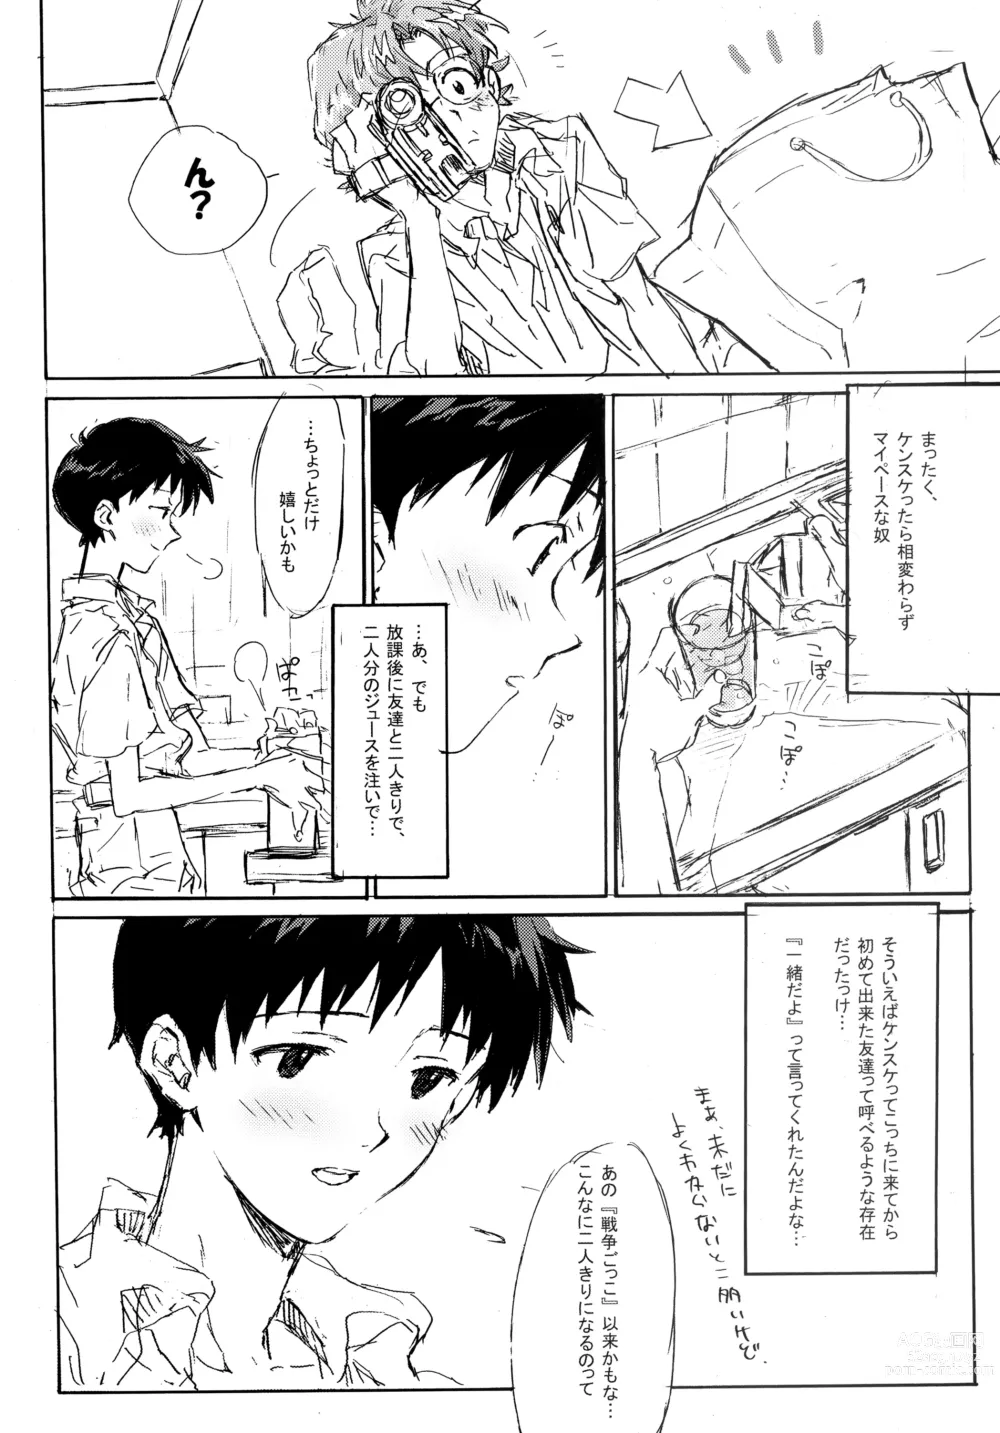 Page 9 of doujinshi Juunen Goshi no Ikari Shinji Hokan Keikaku